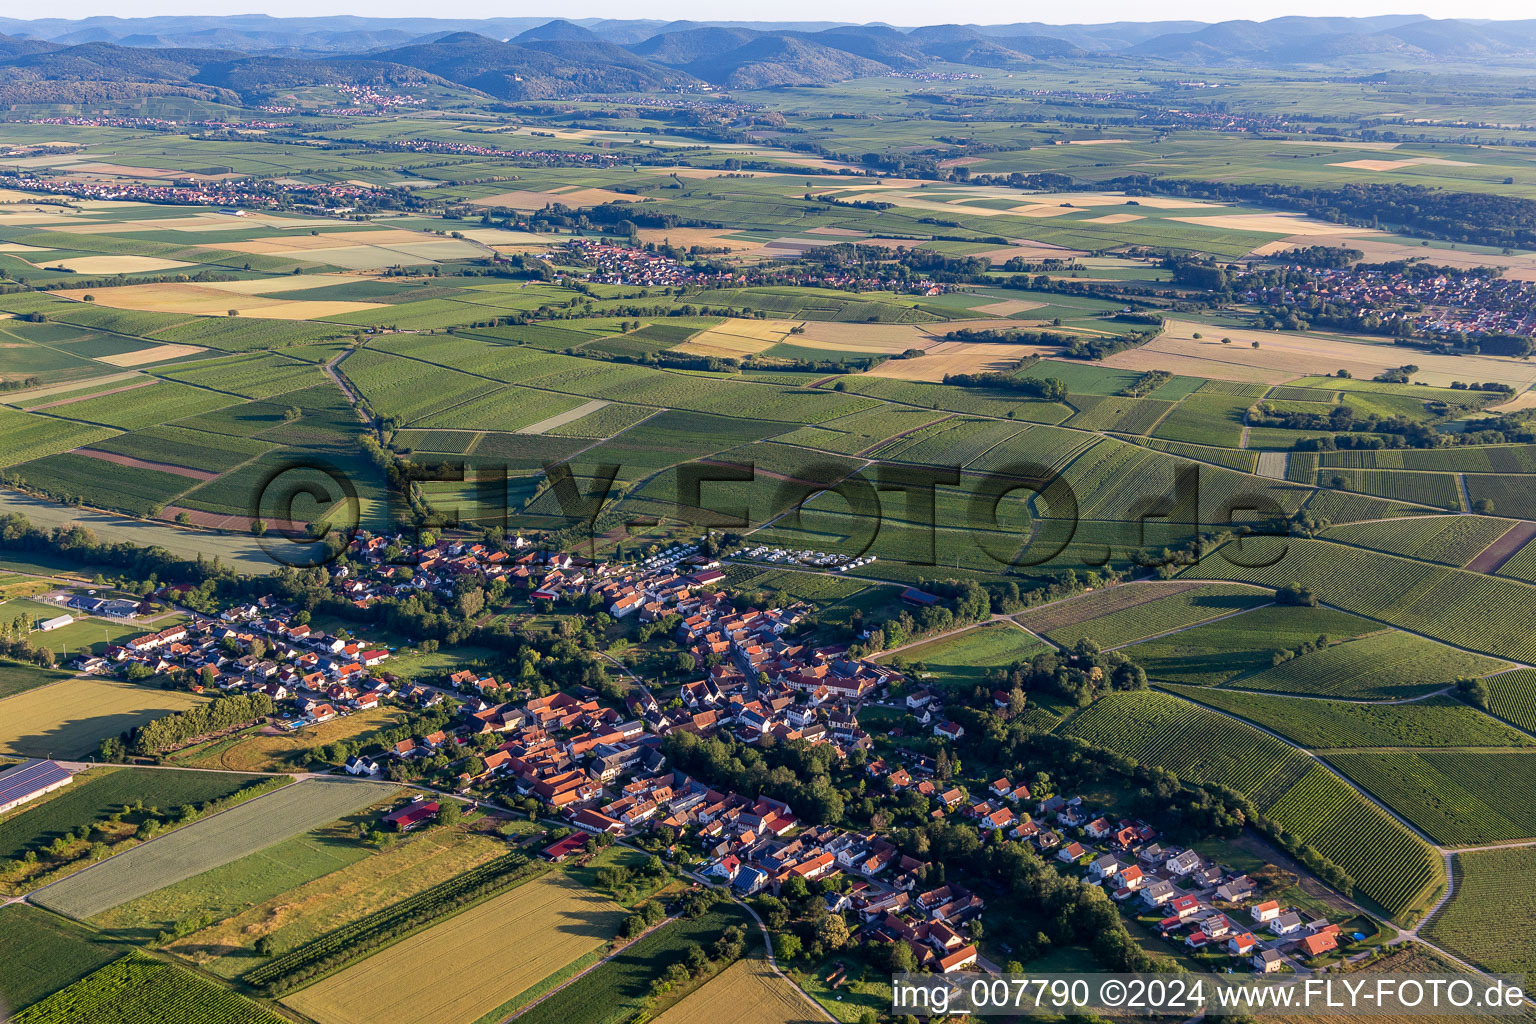 Vue aérienne de Champs agricoles et surfaces utilisables à Dierbach dans le département Rhénanie-Palatinat, Allemagne